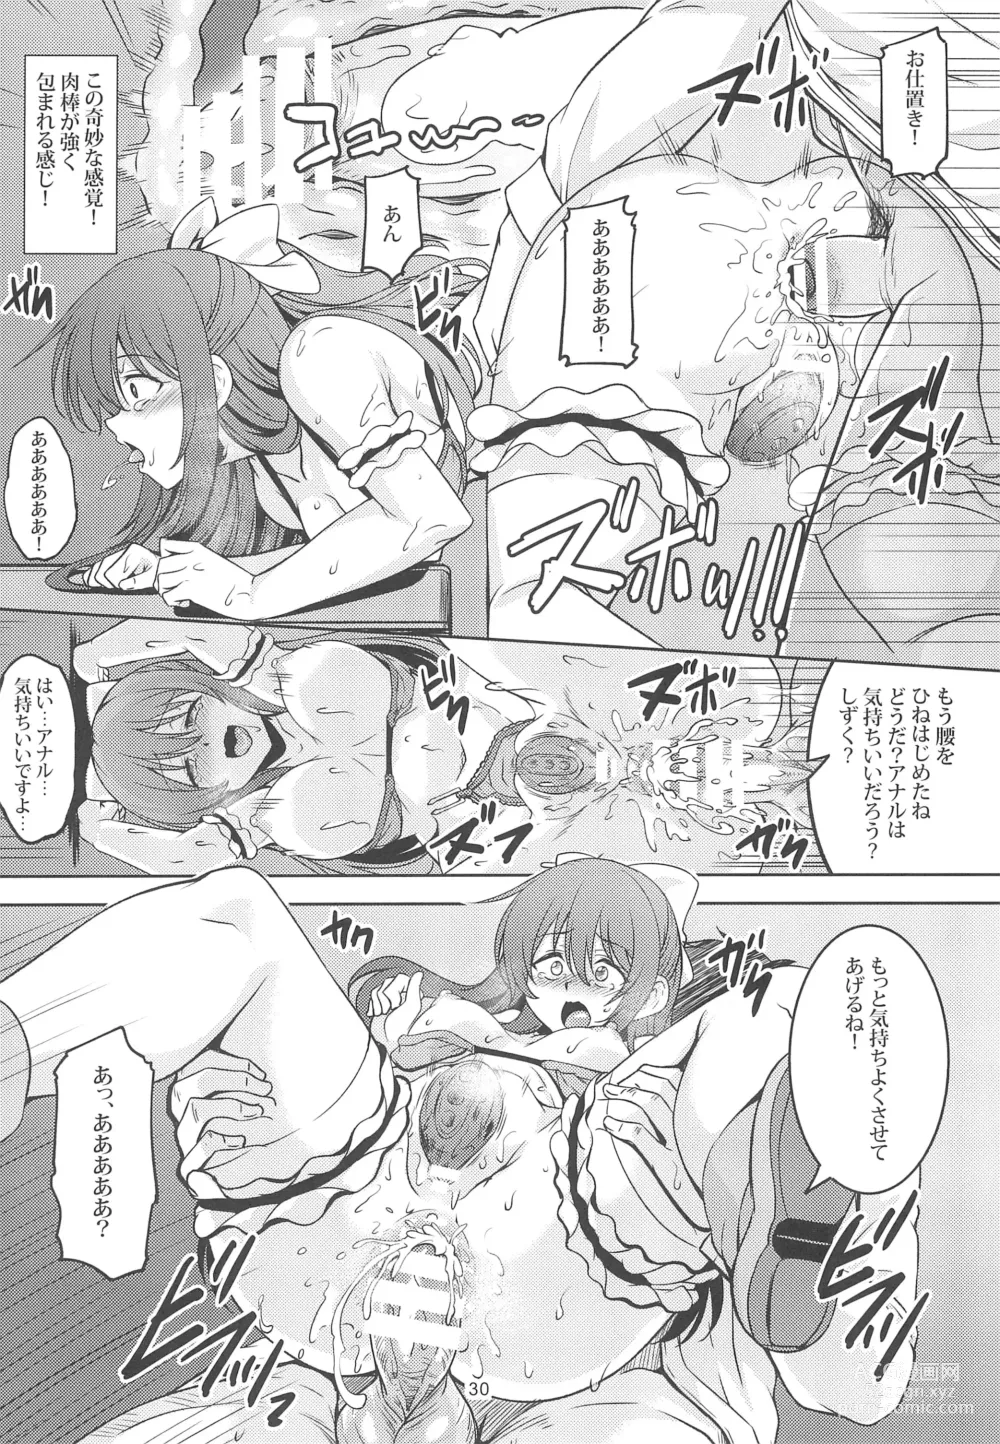 Page 32 of doujinshi Miwaku no Shizuku